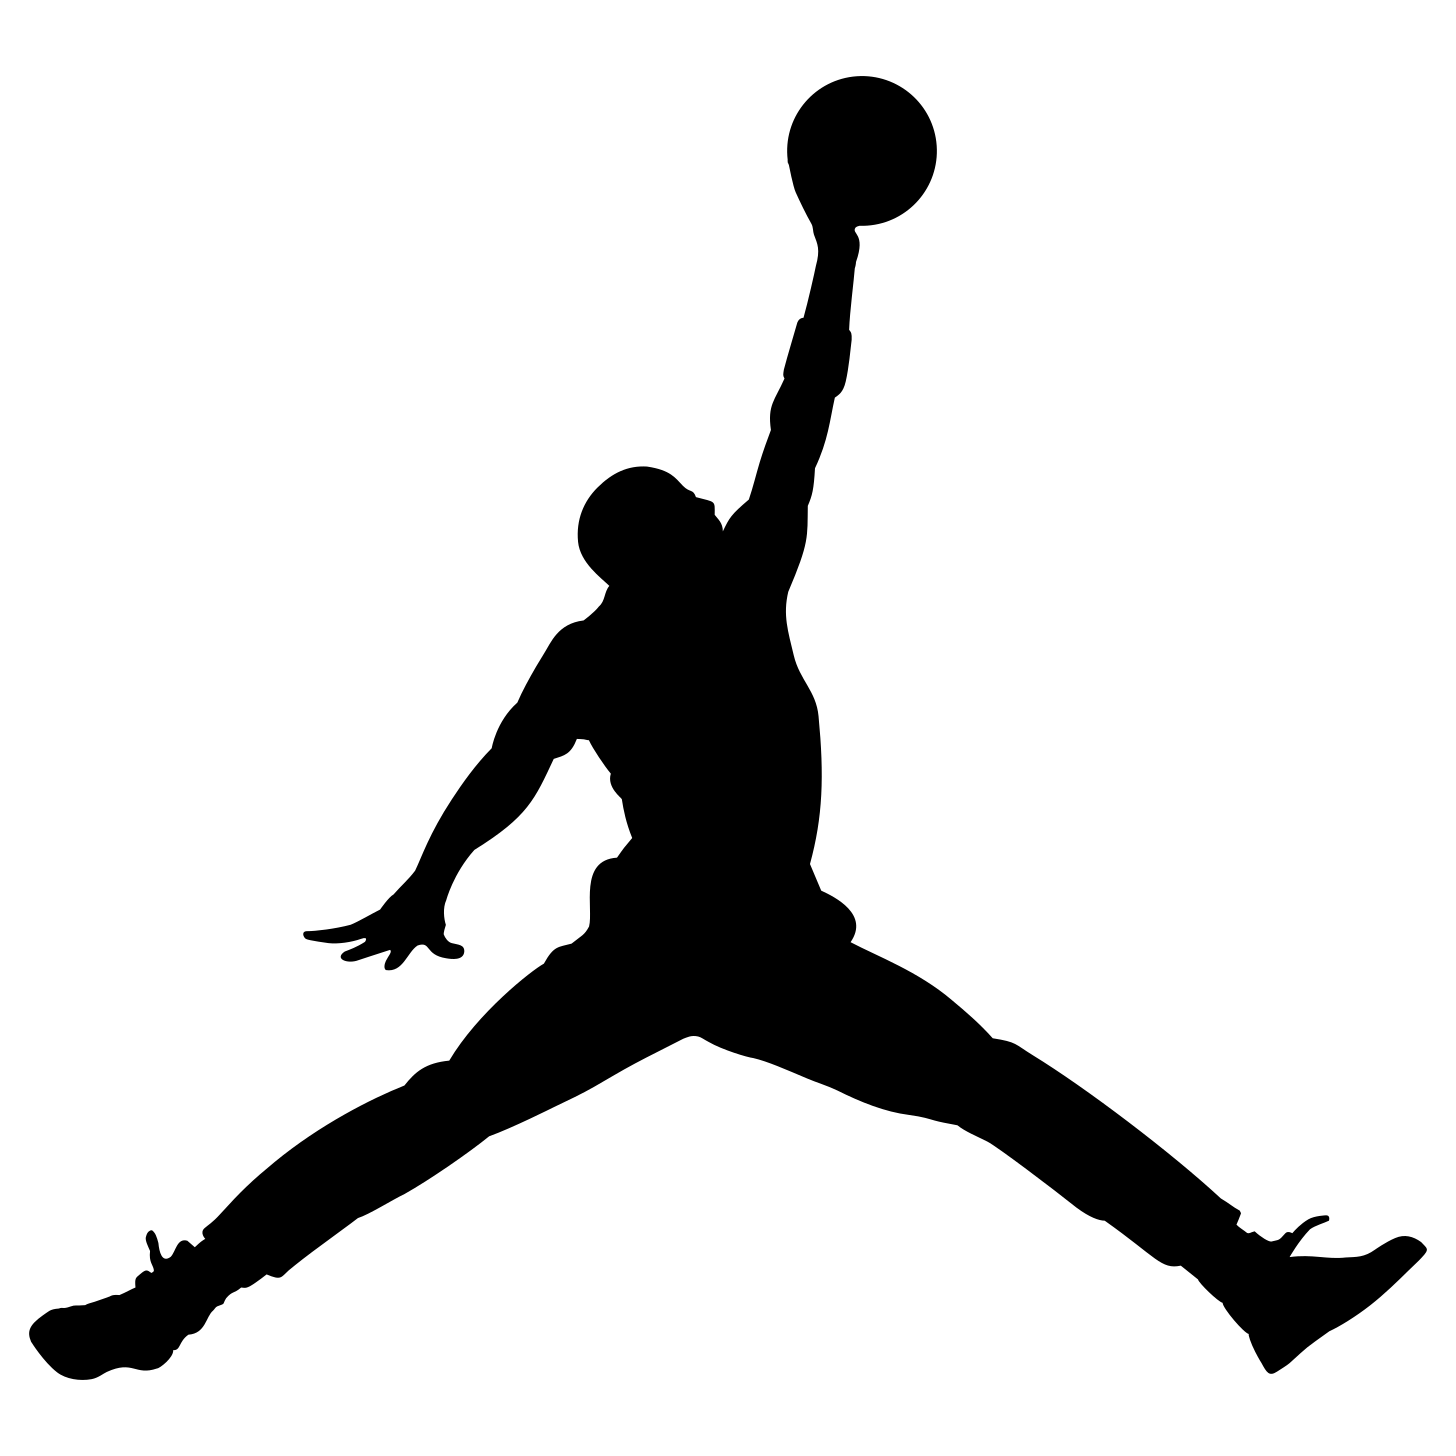 Jumpman (logo) - Wikipedia